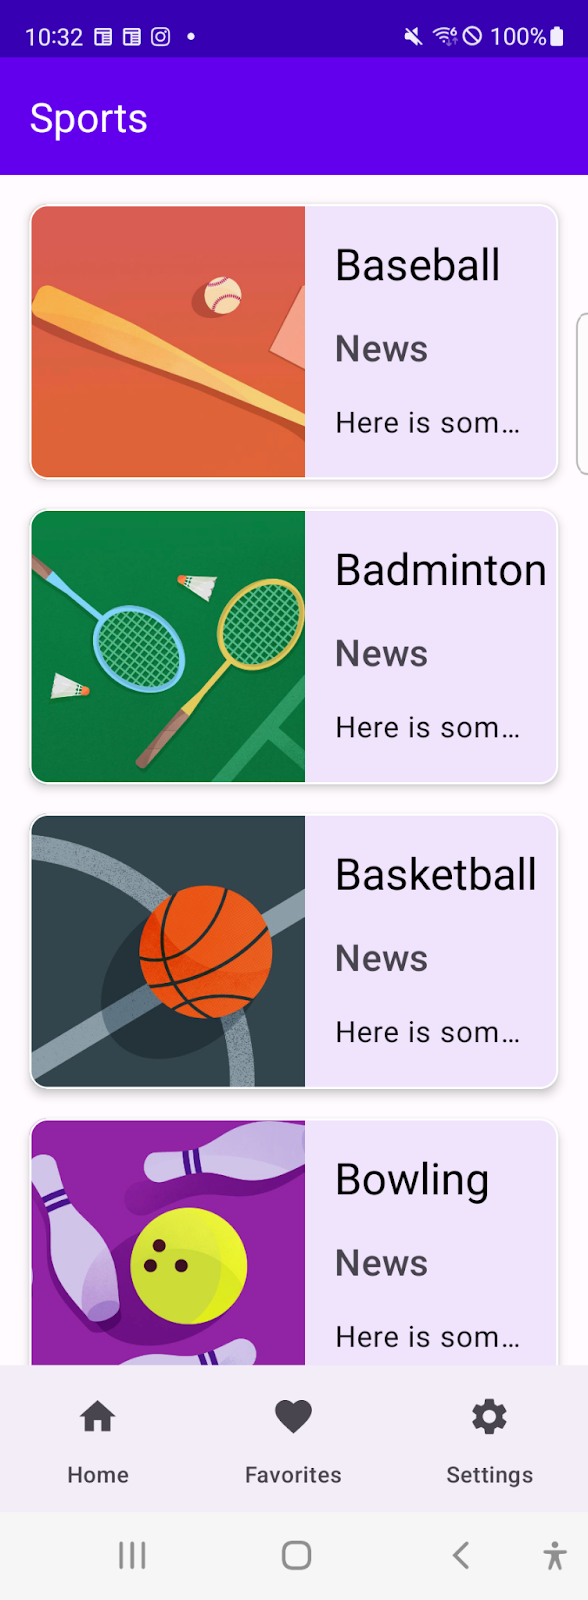 Ứng dụng thể thao hiện danh sách các môn thể thao trong một cửa sổ thu gọn, trong đó thanh điều hướng là một thành phần điều hướng trên cùng.